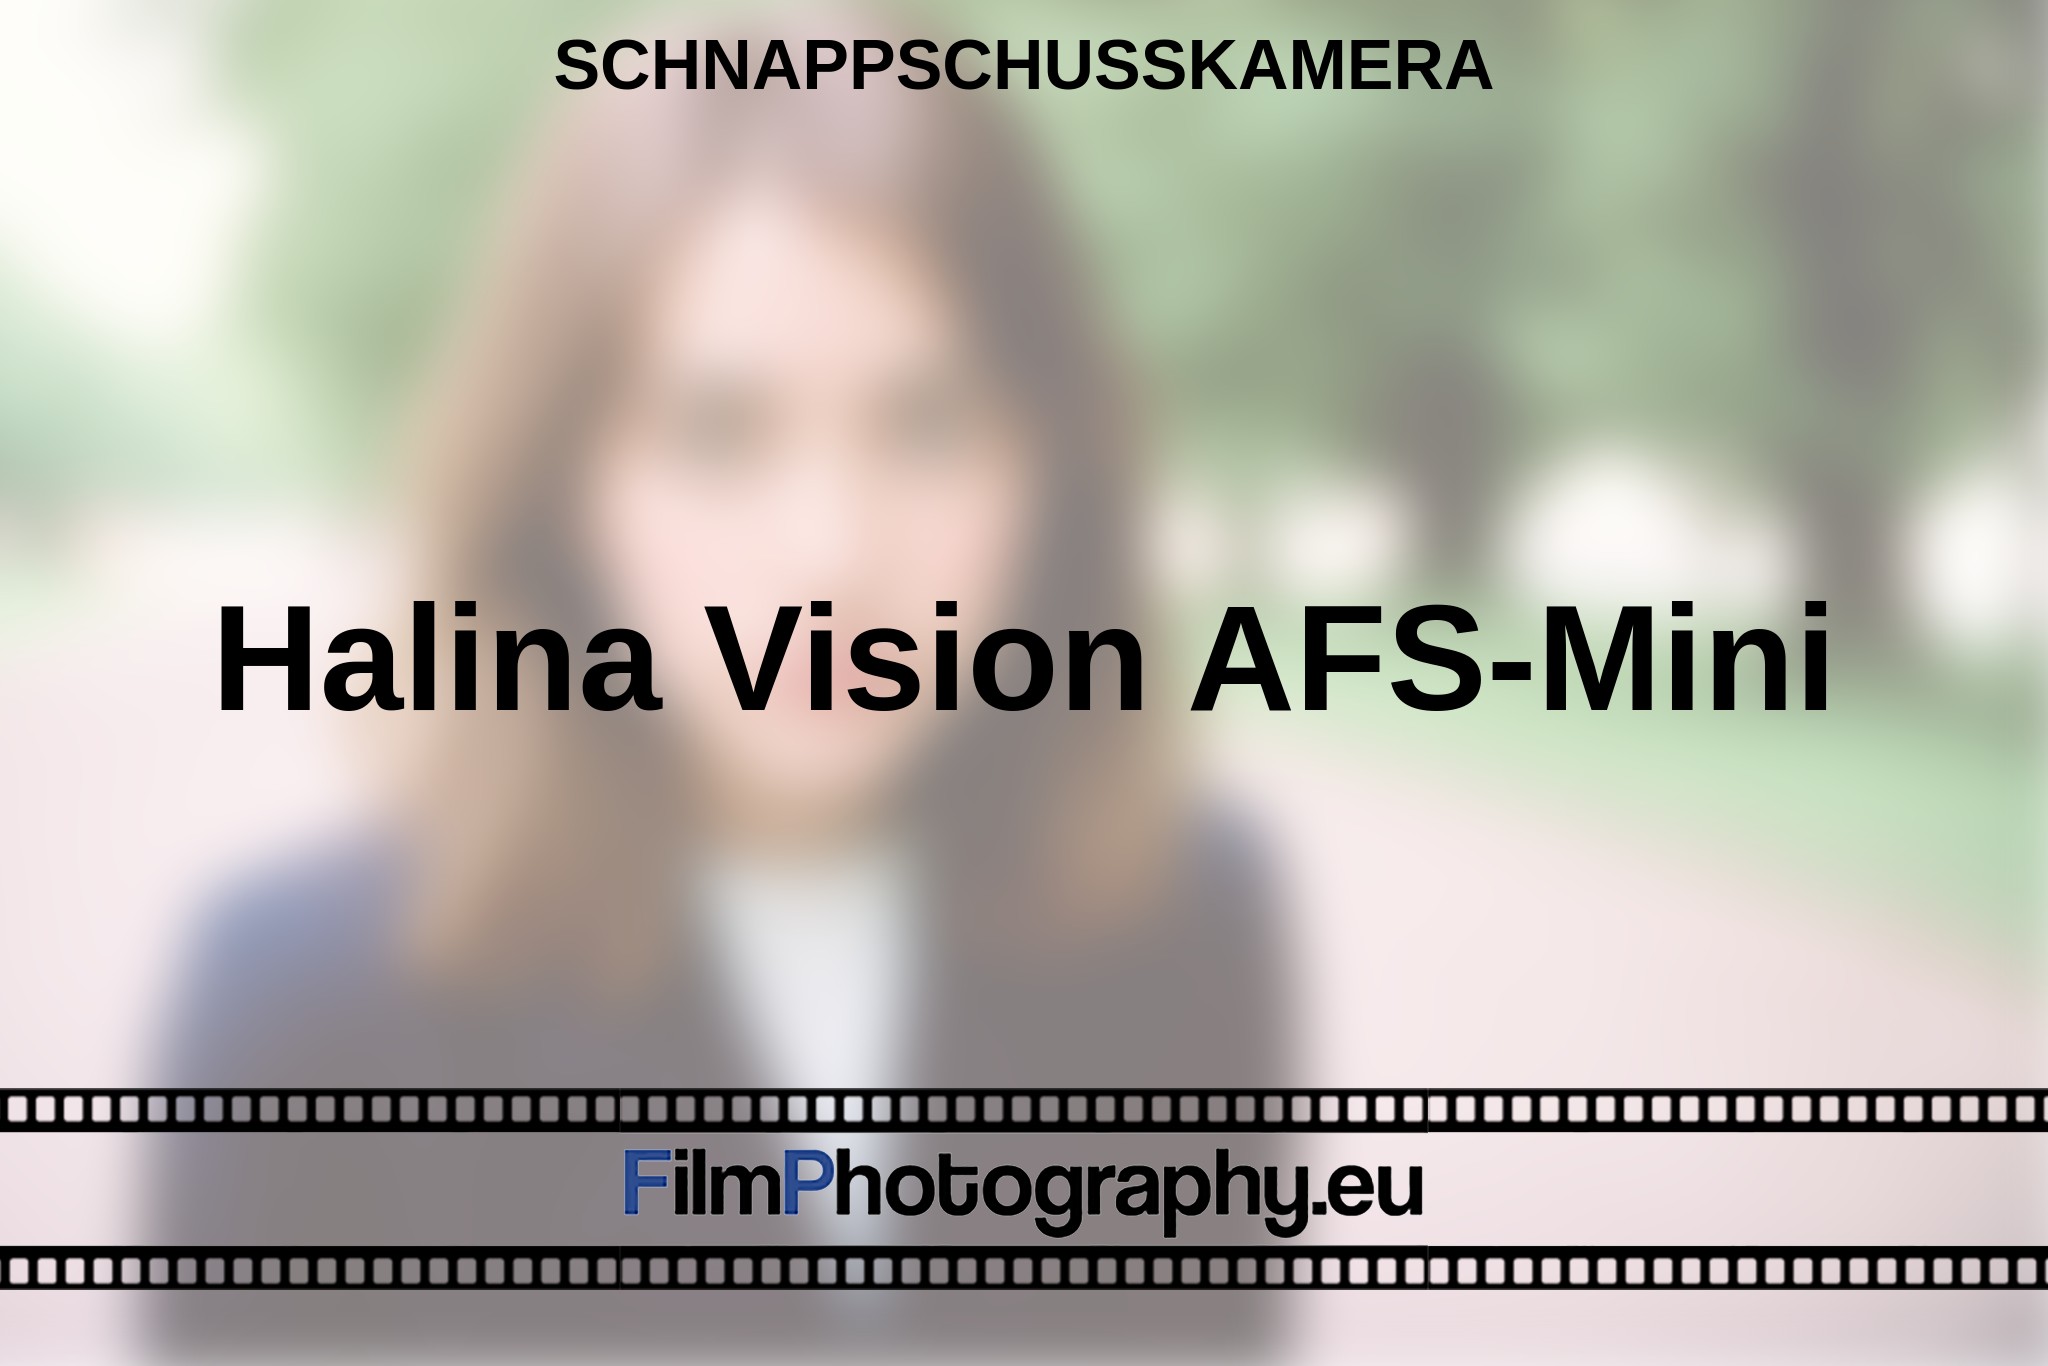 halina-vision-afs-mini-schnappschusskamera-bnv.jpg